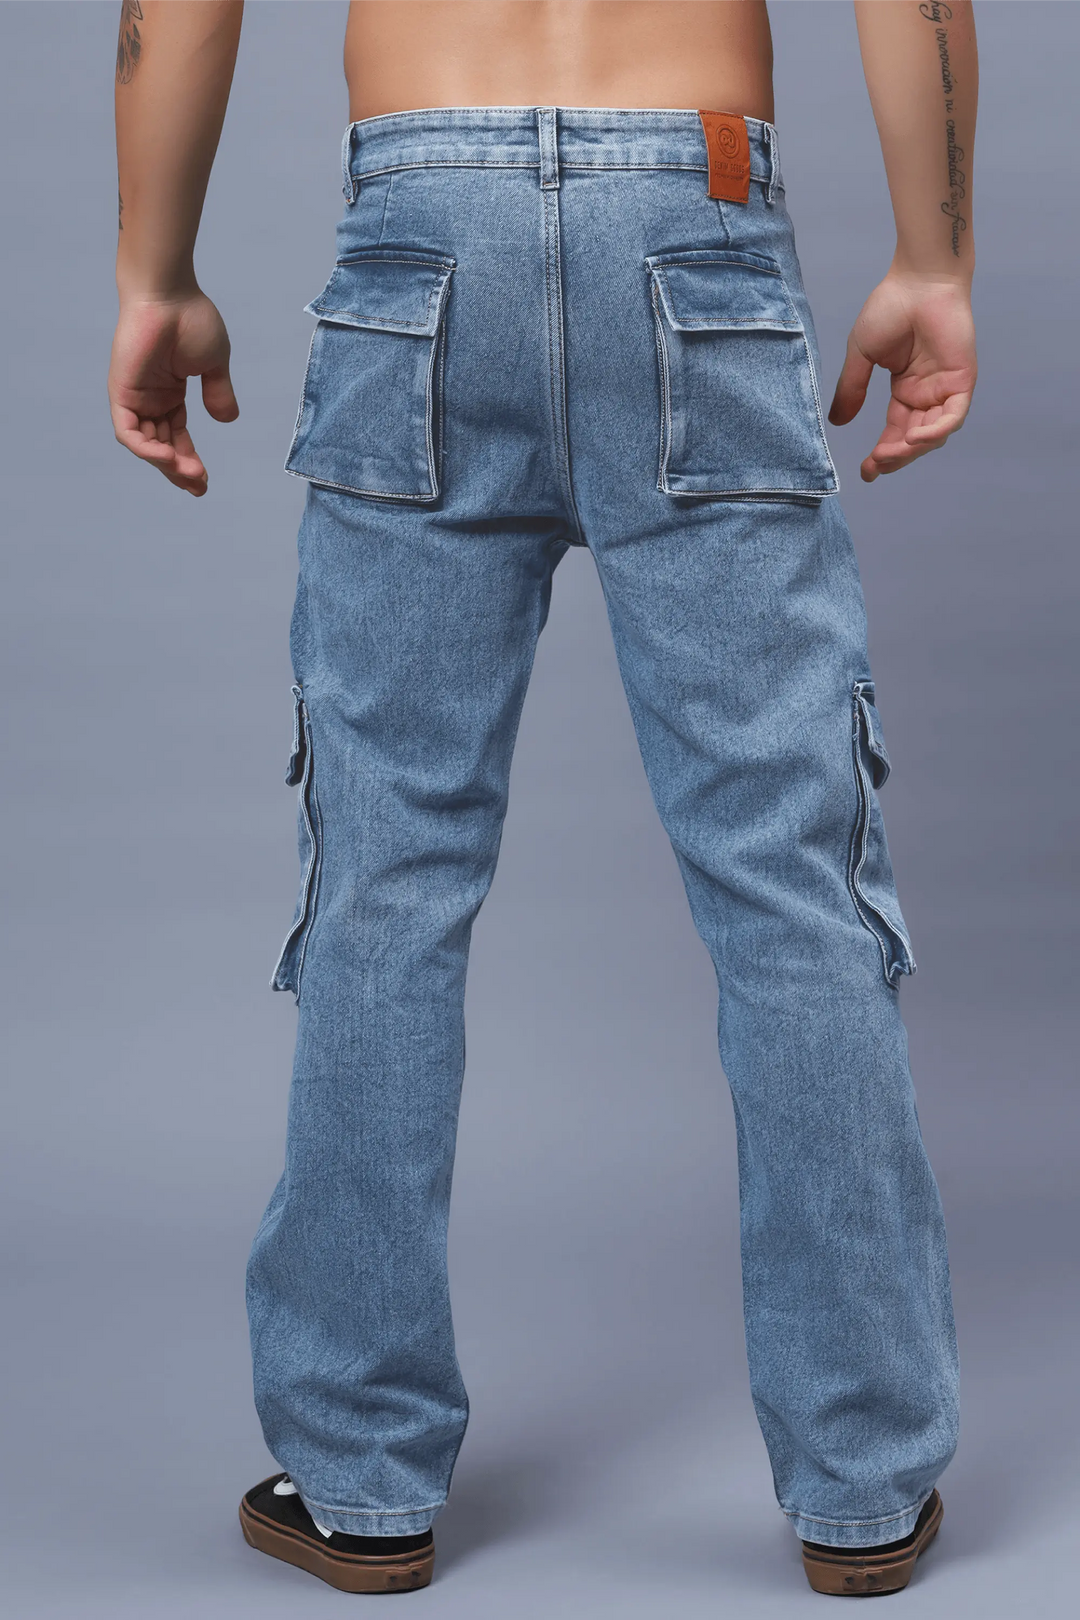 Men's Loose Fit Multiple Pocket Blue Cargo Denim Jeans